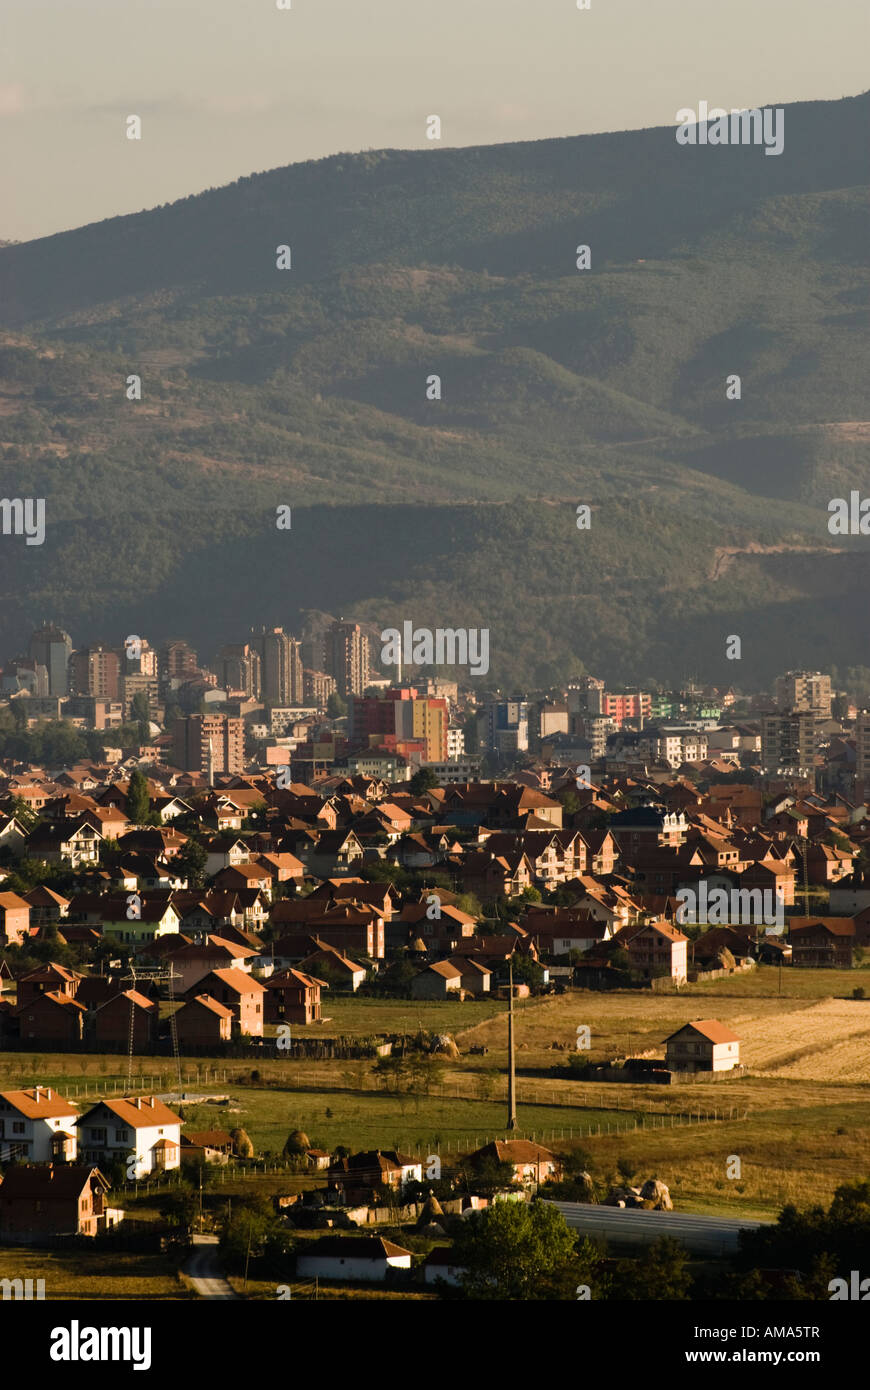 Mitrovica, Kosovo province, Serbia Stock Photo